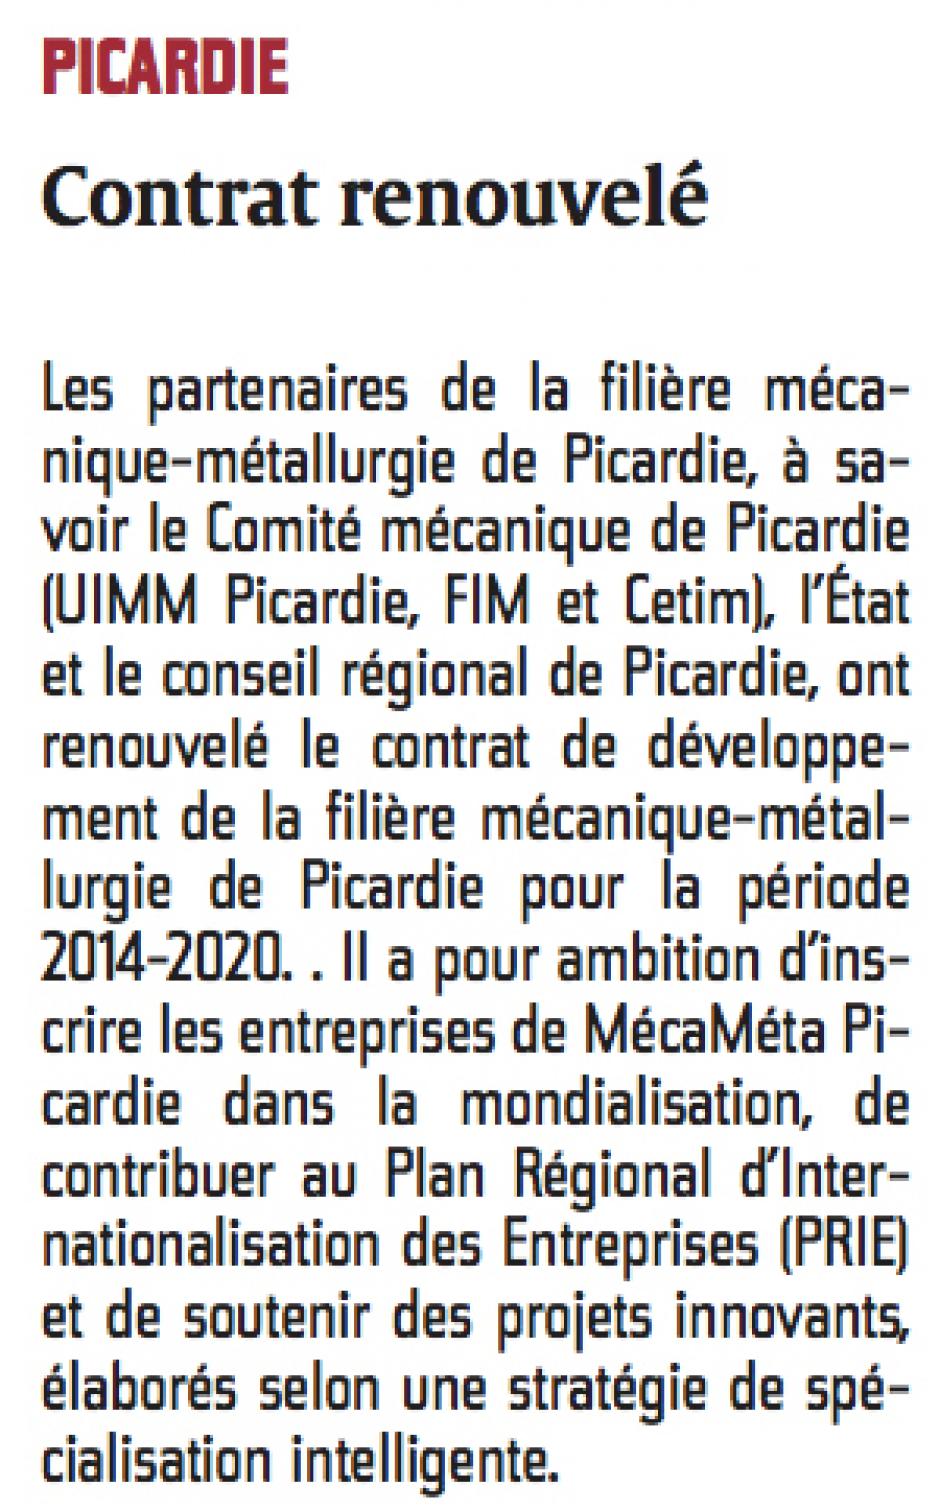 20141024-CP-Picardie-Contrat [de développement de la filière mécanique-métallurgie] renouvelé